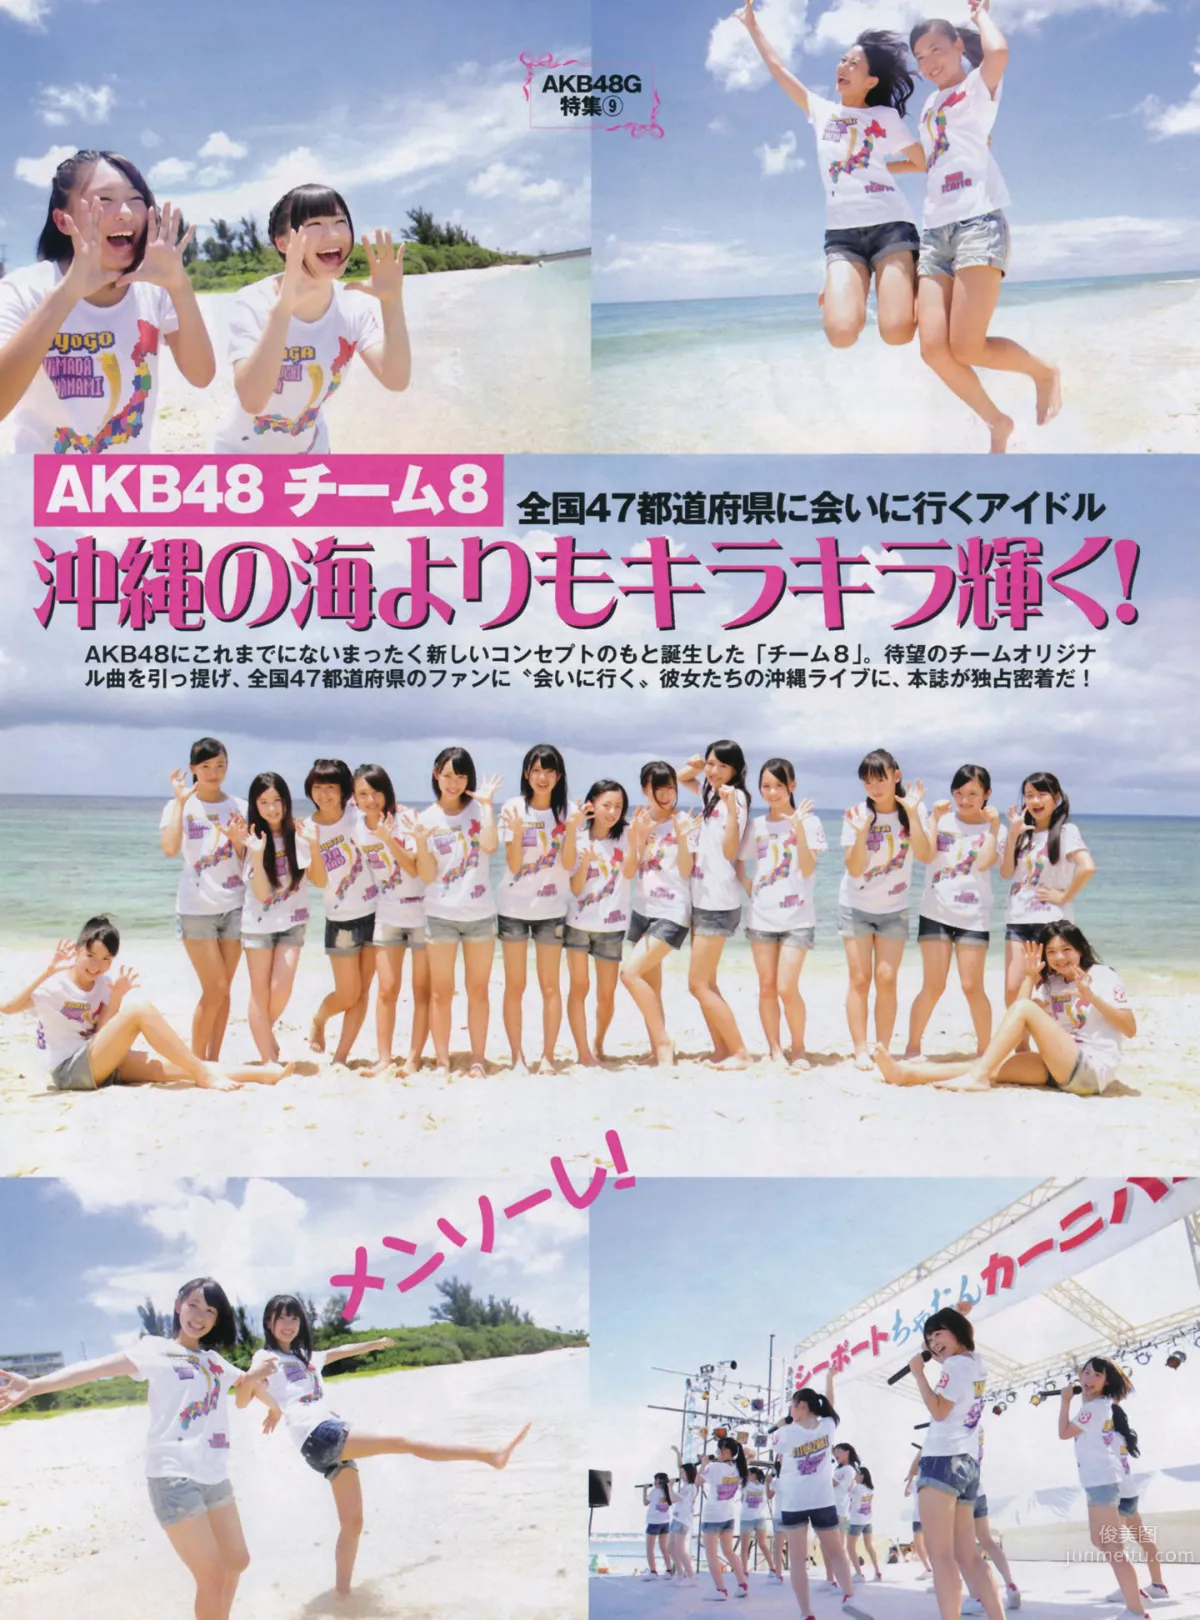 [FLASH] 特刊 2014 Summer AKB48_51